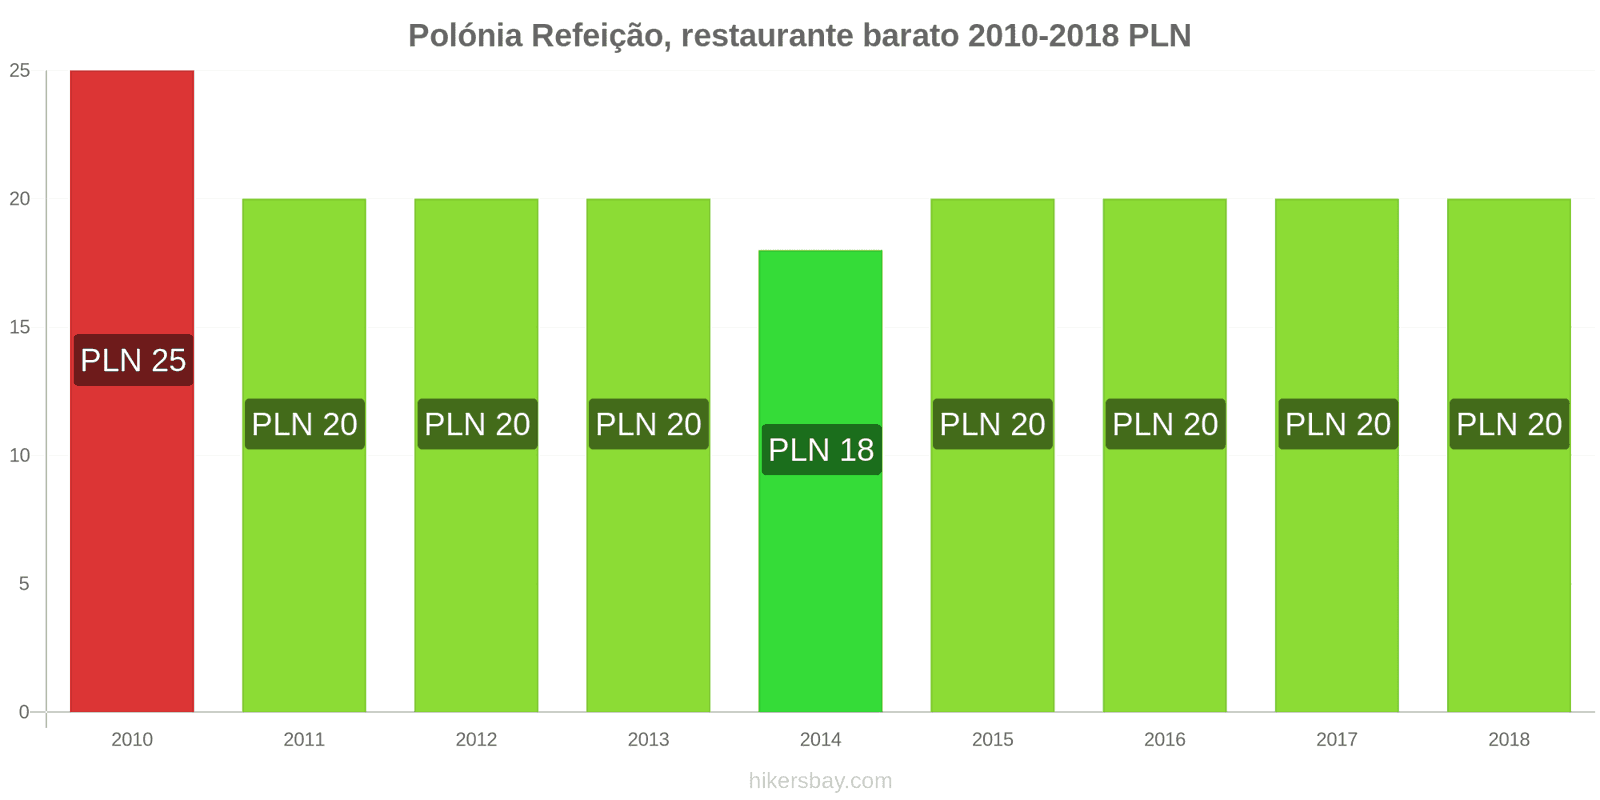 Polónia mudanças de preços Refeição em um restaurante econômico hikersbay.com